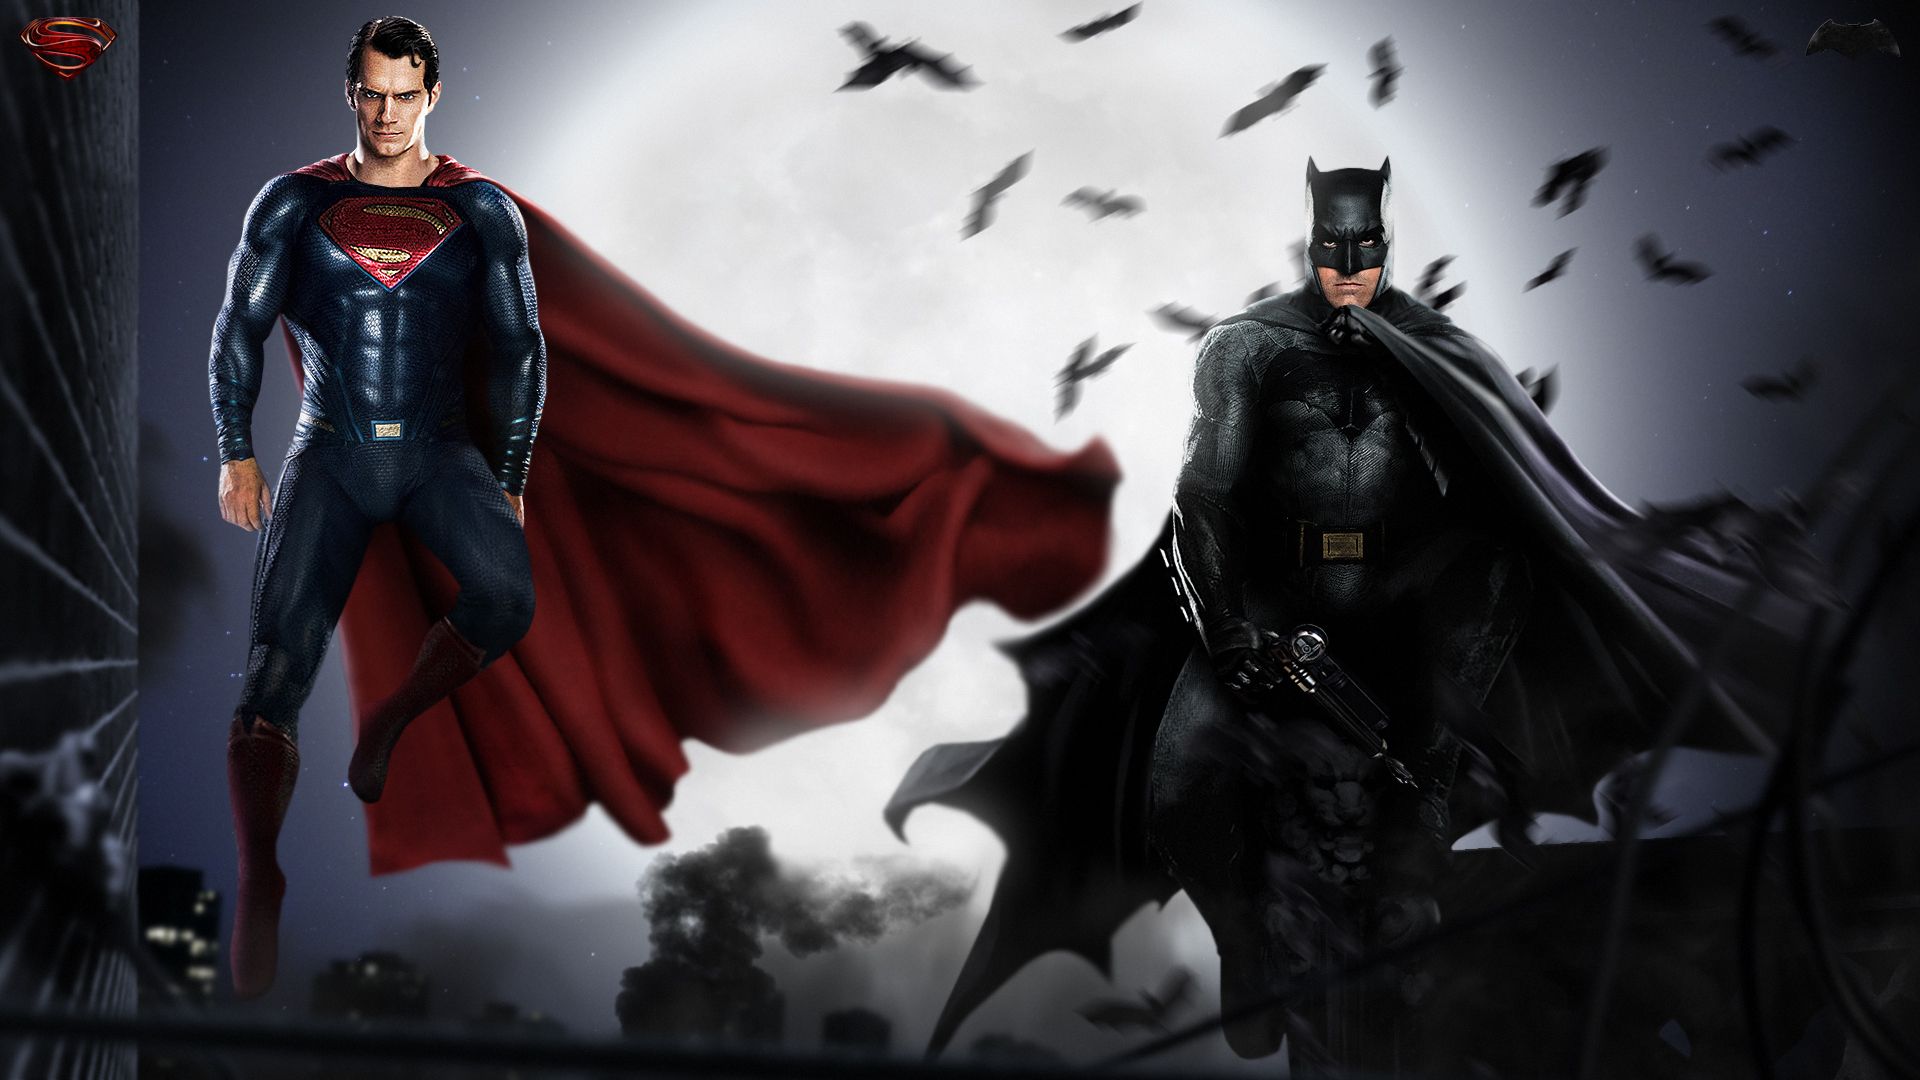 Batman And Superman HD Wallpaper. Wallpaper, Background, Image, Art Photo. Batman vs superman, Superman wallpaper, Batman wallpaper